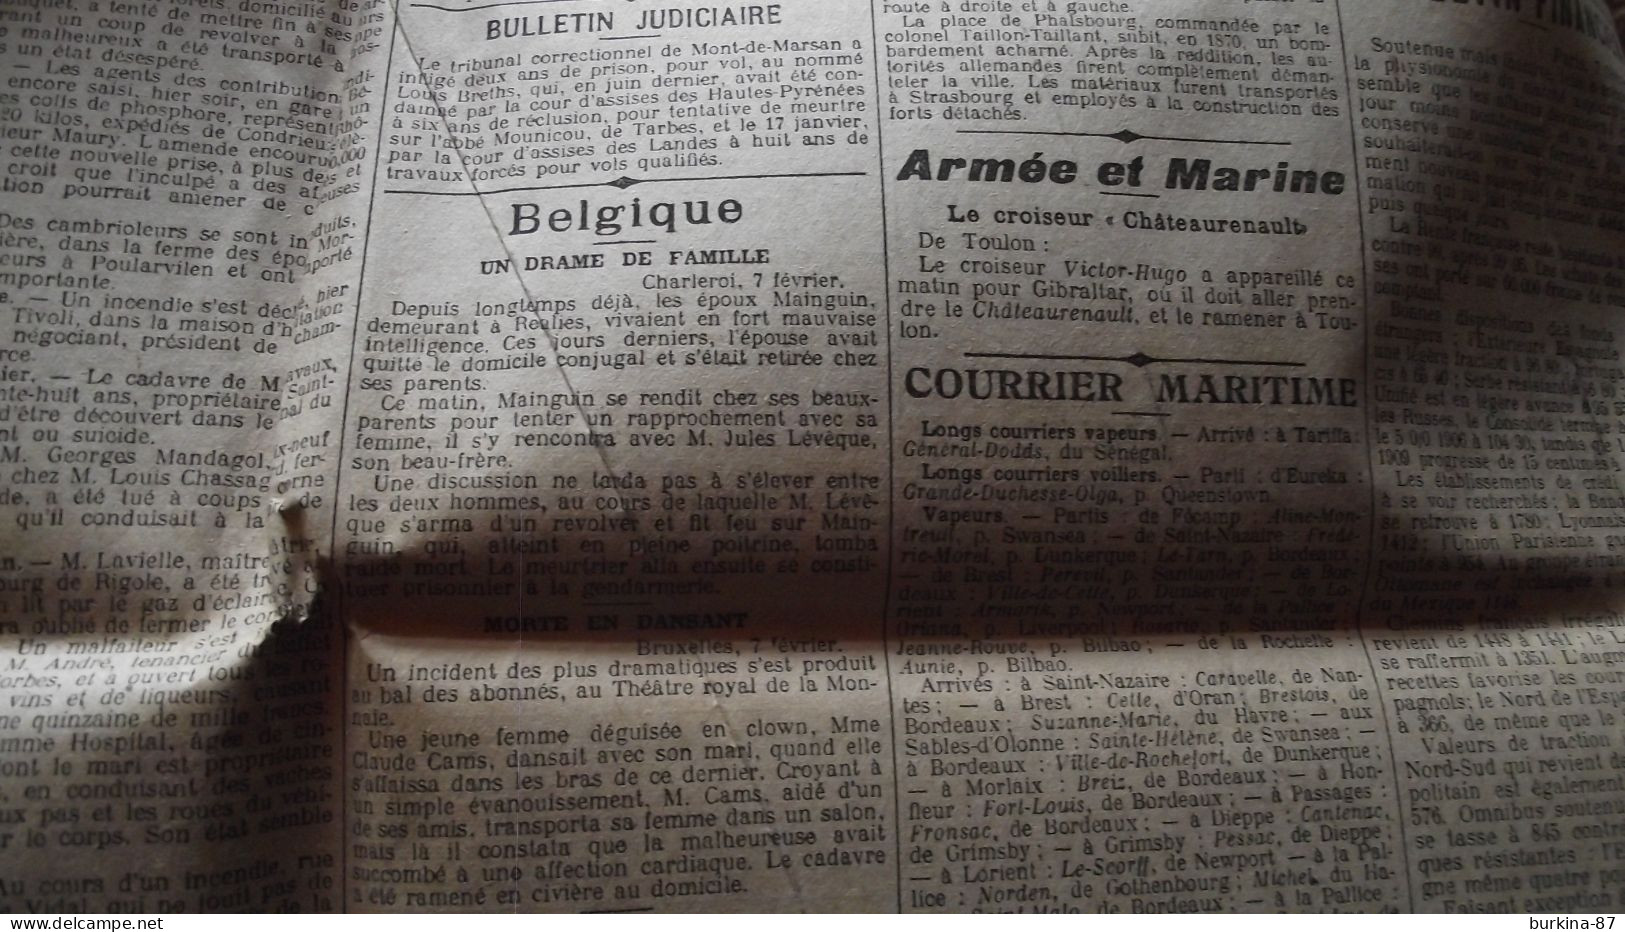 Le PETIT PARISIEN, journal, Fevrier v1910, Paris quotidien politique littéraire